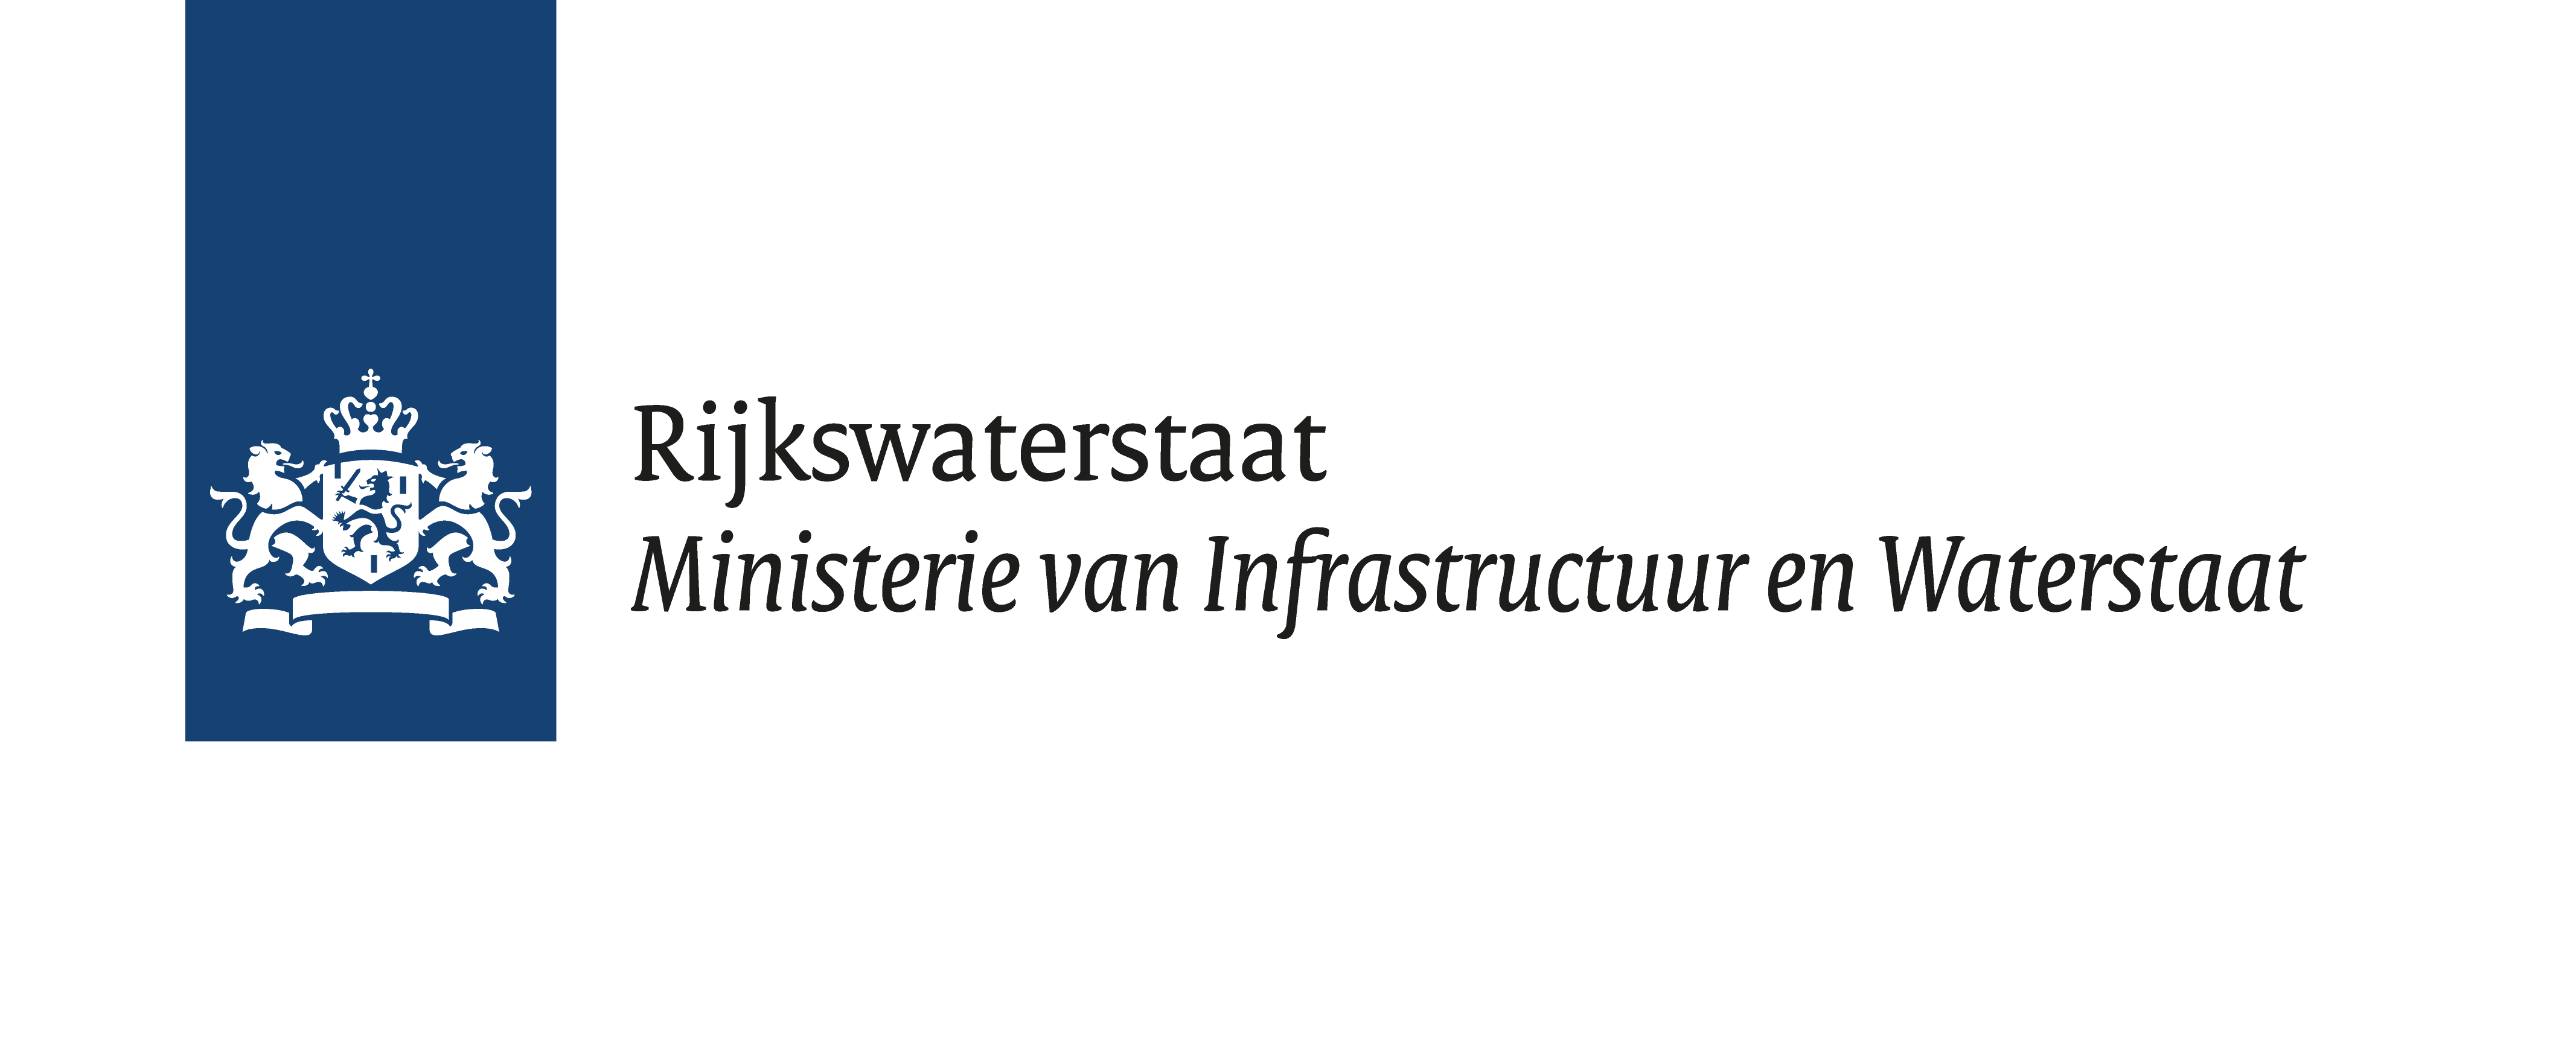 RWS Logo - Rijkswaterstaat Coöperatieve ITS Corridor en InterCor